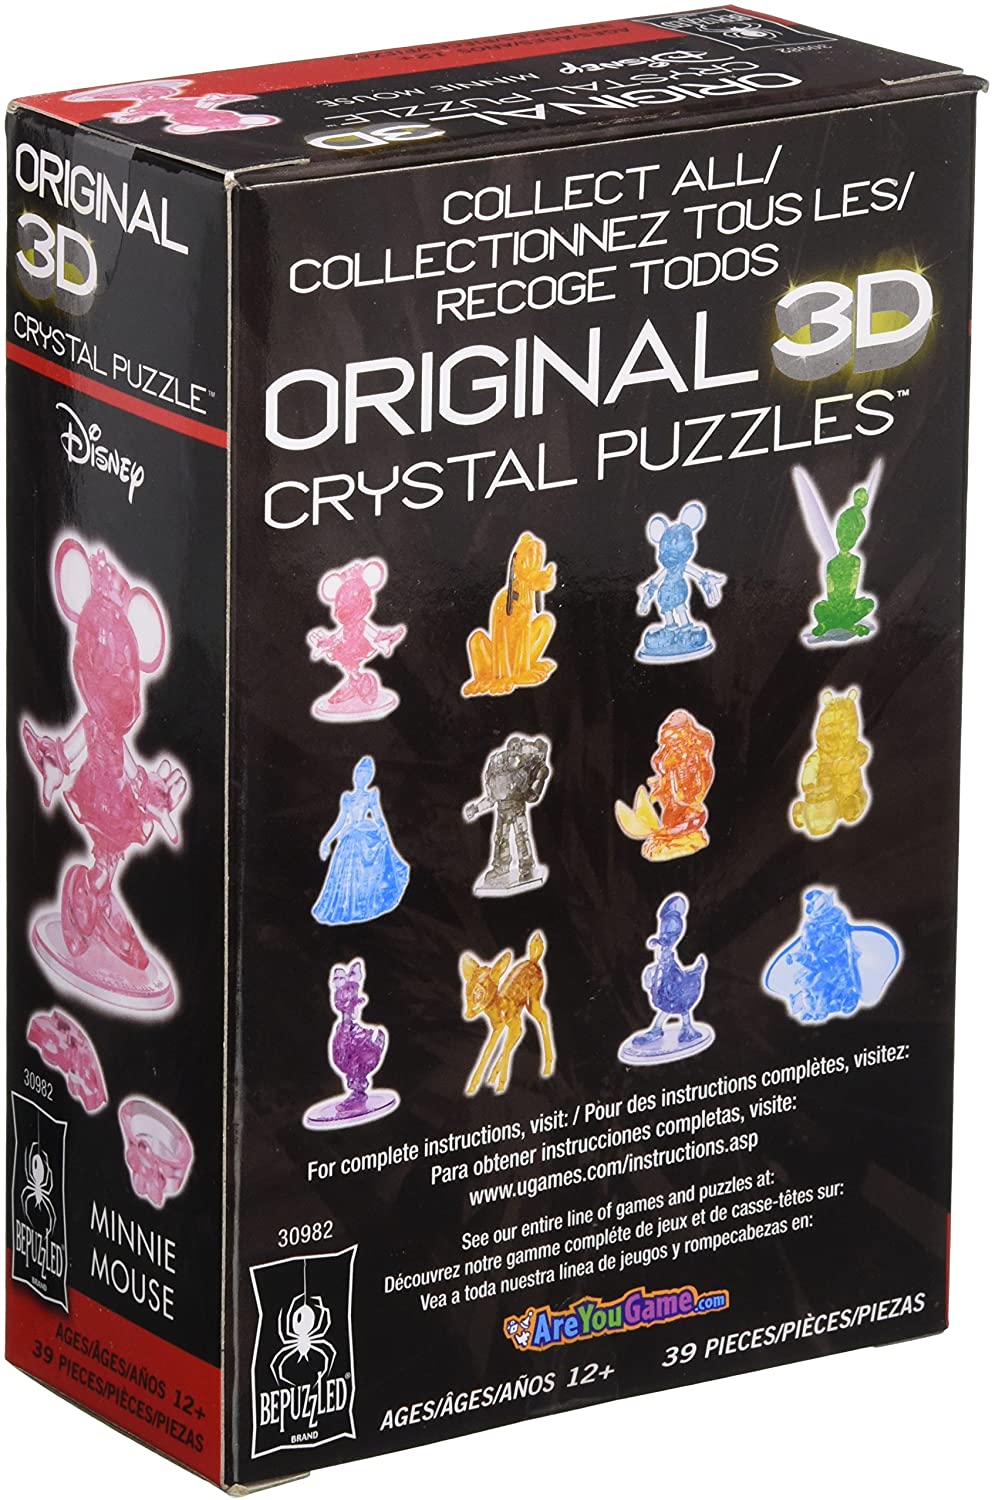 Tous les puzzles 3D